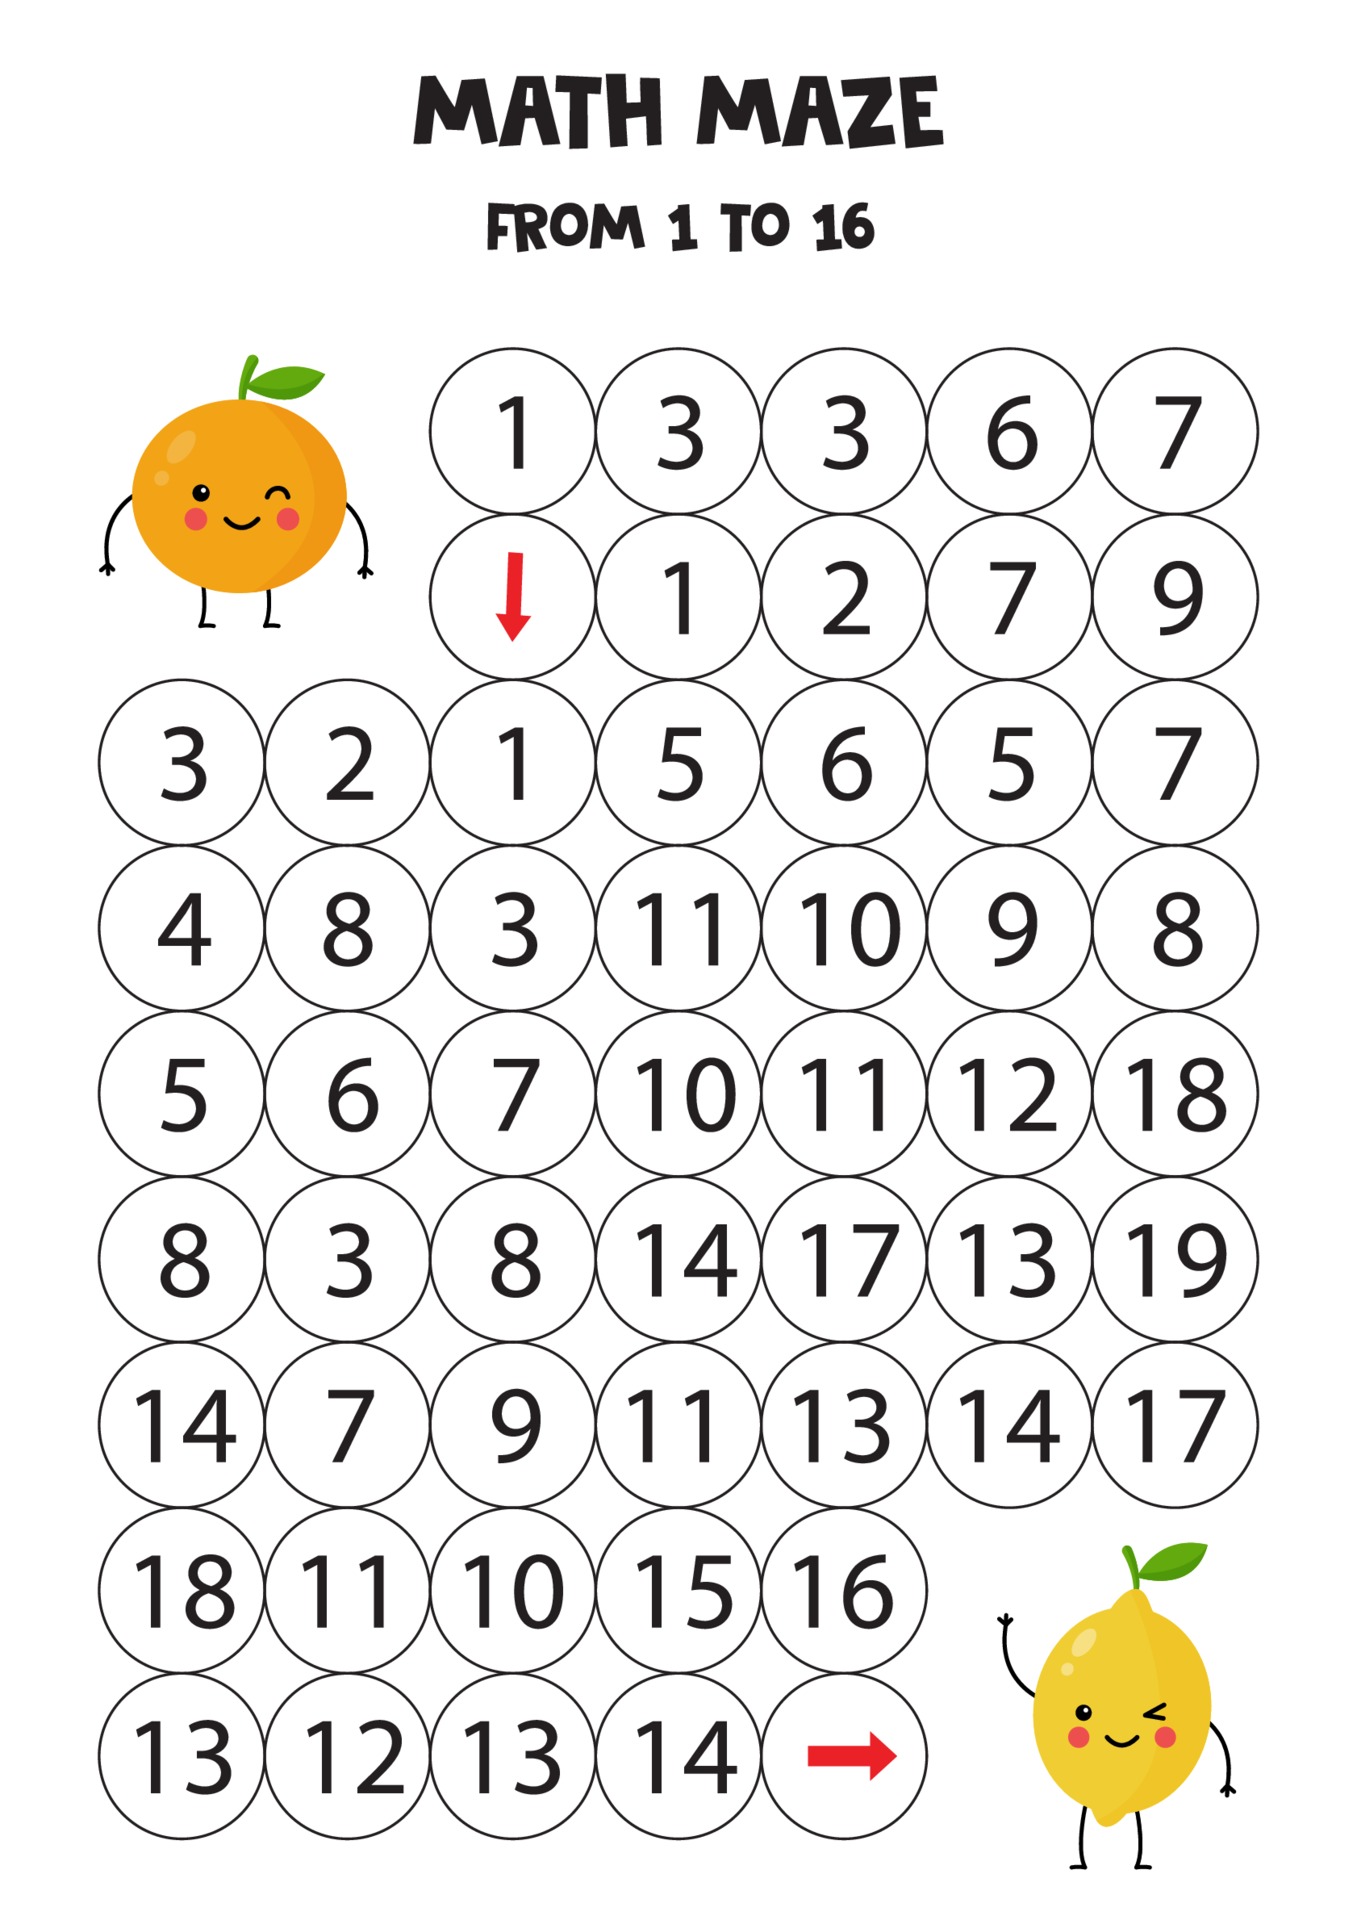 jogo de matemática para crianças. limão kawaii fofo e laranja. 2250408  Vetor no Vecteezy